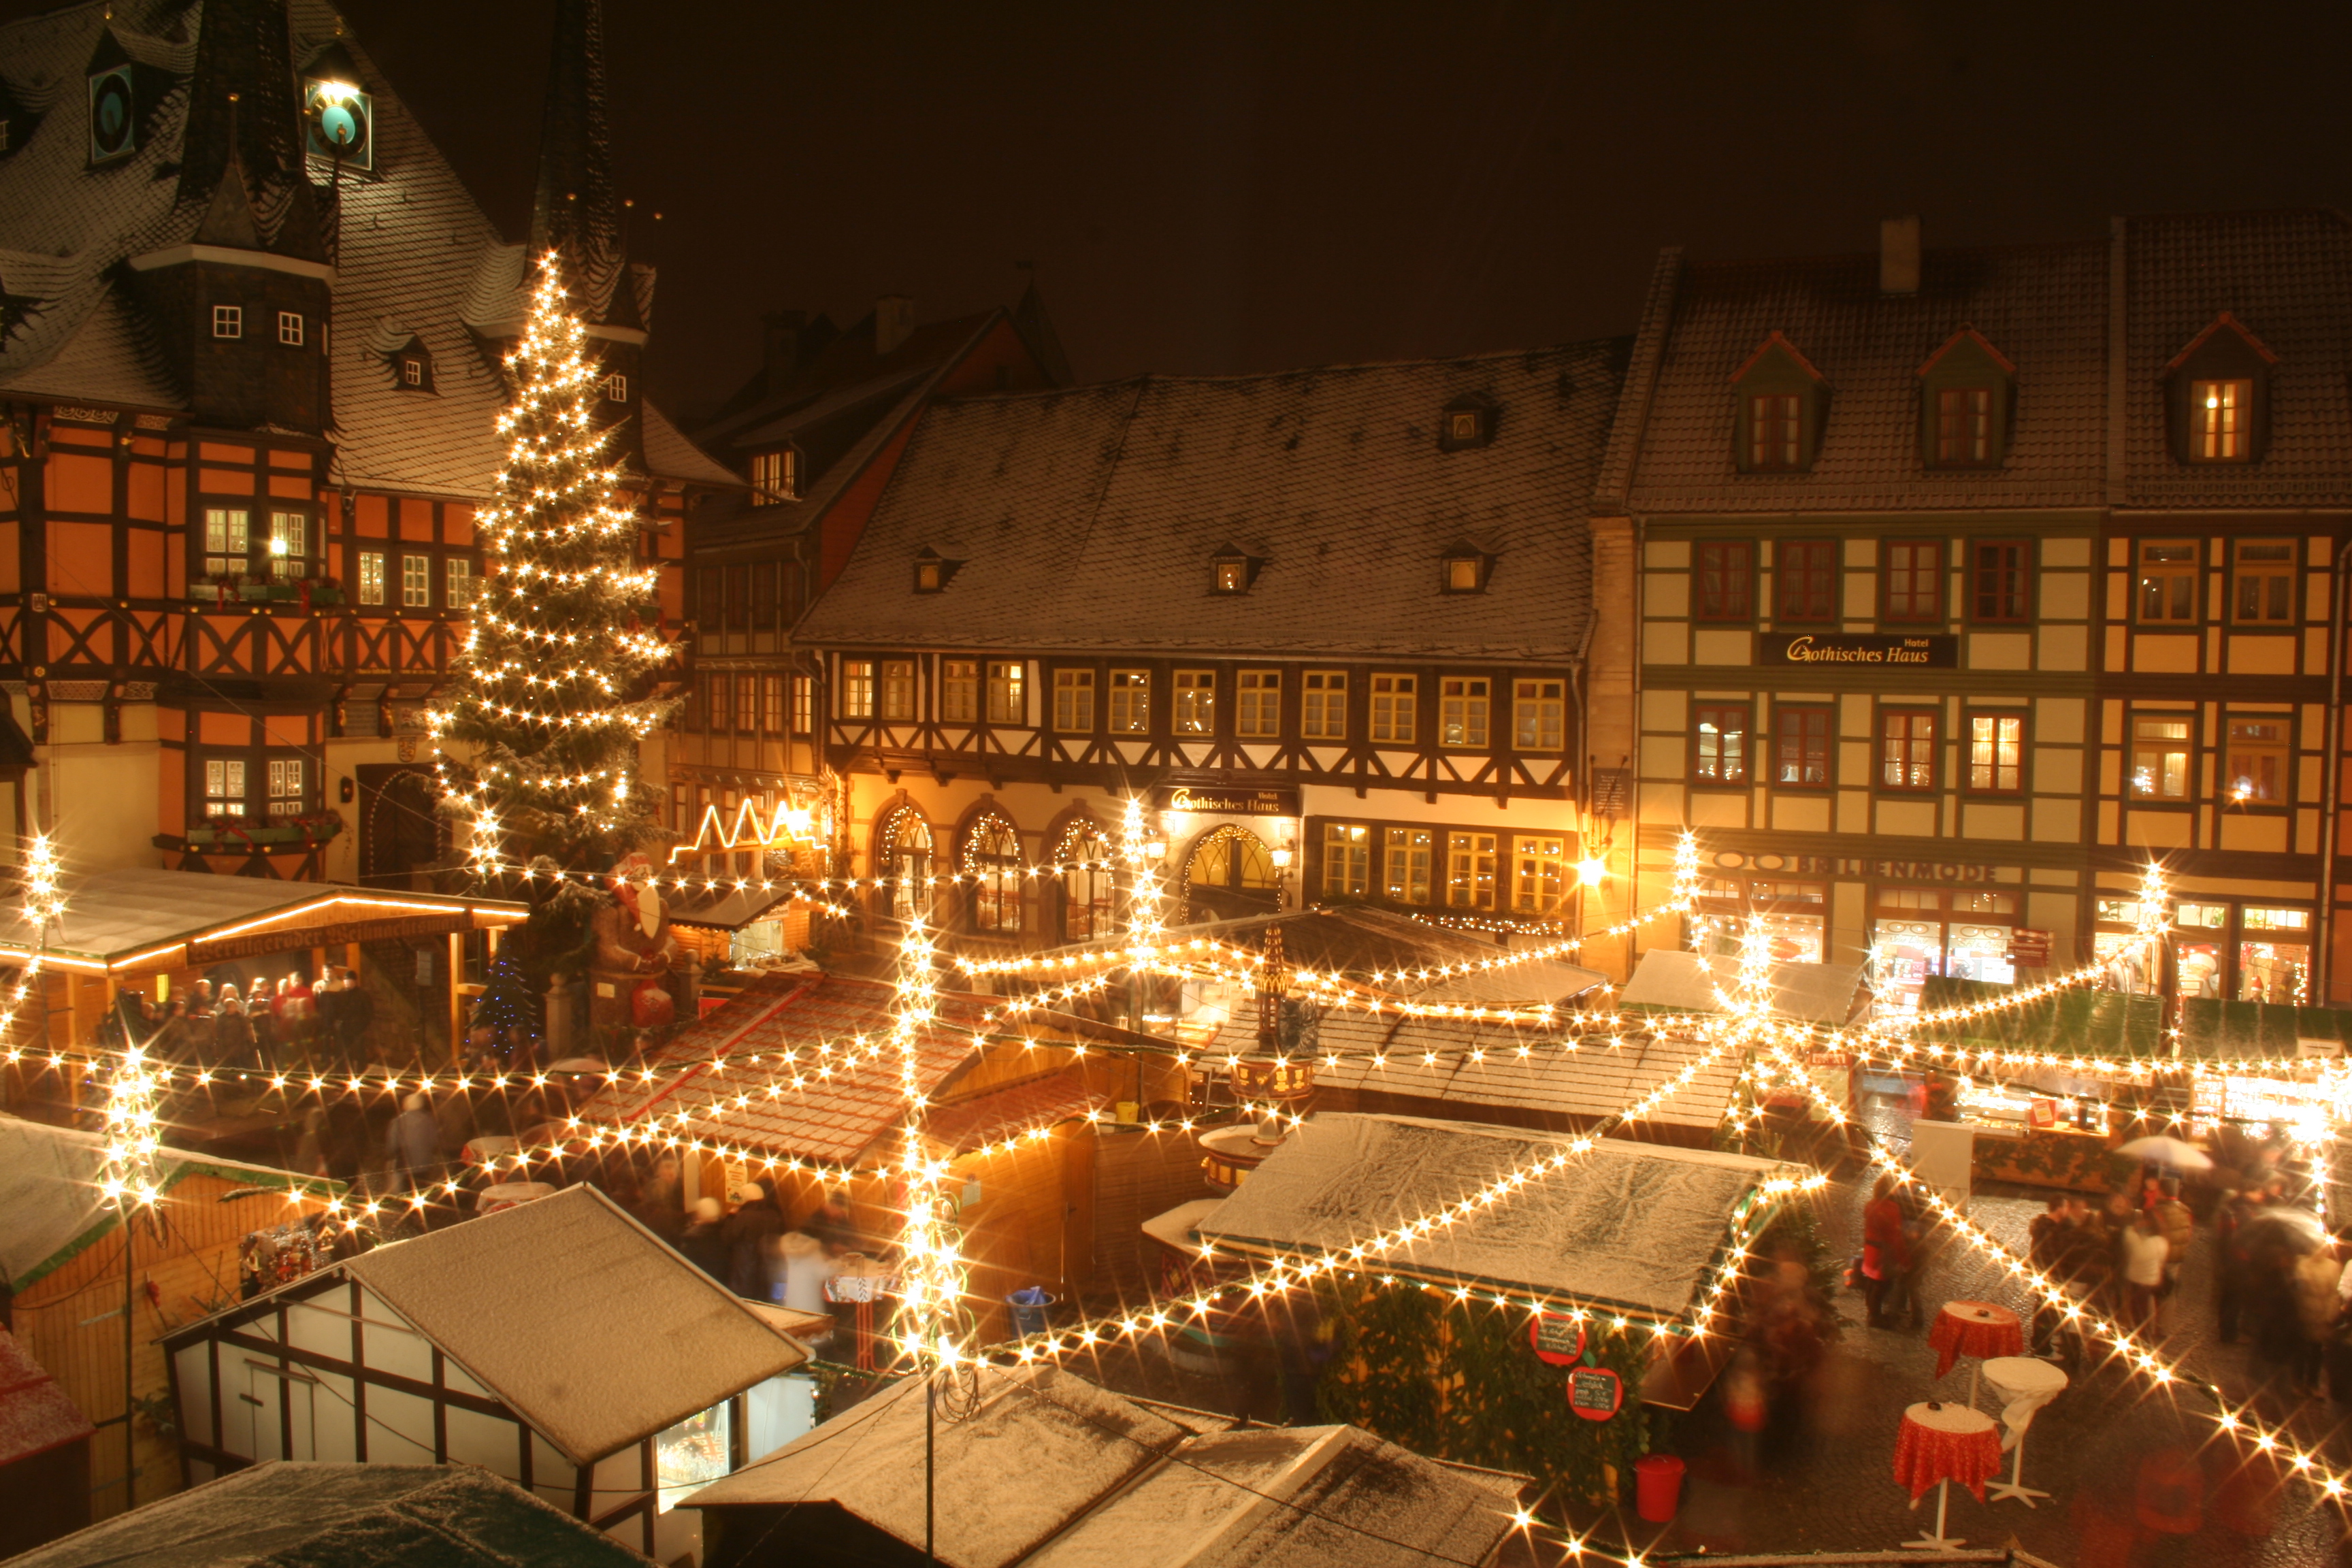 Der festlich geschmückte Weihnachtsmarkt in Wernigerode vor dem historischen Rathaus.
